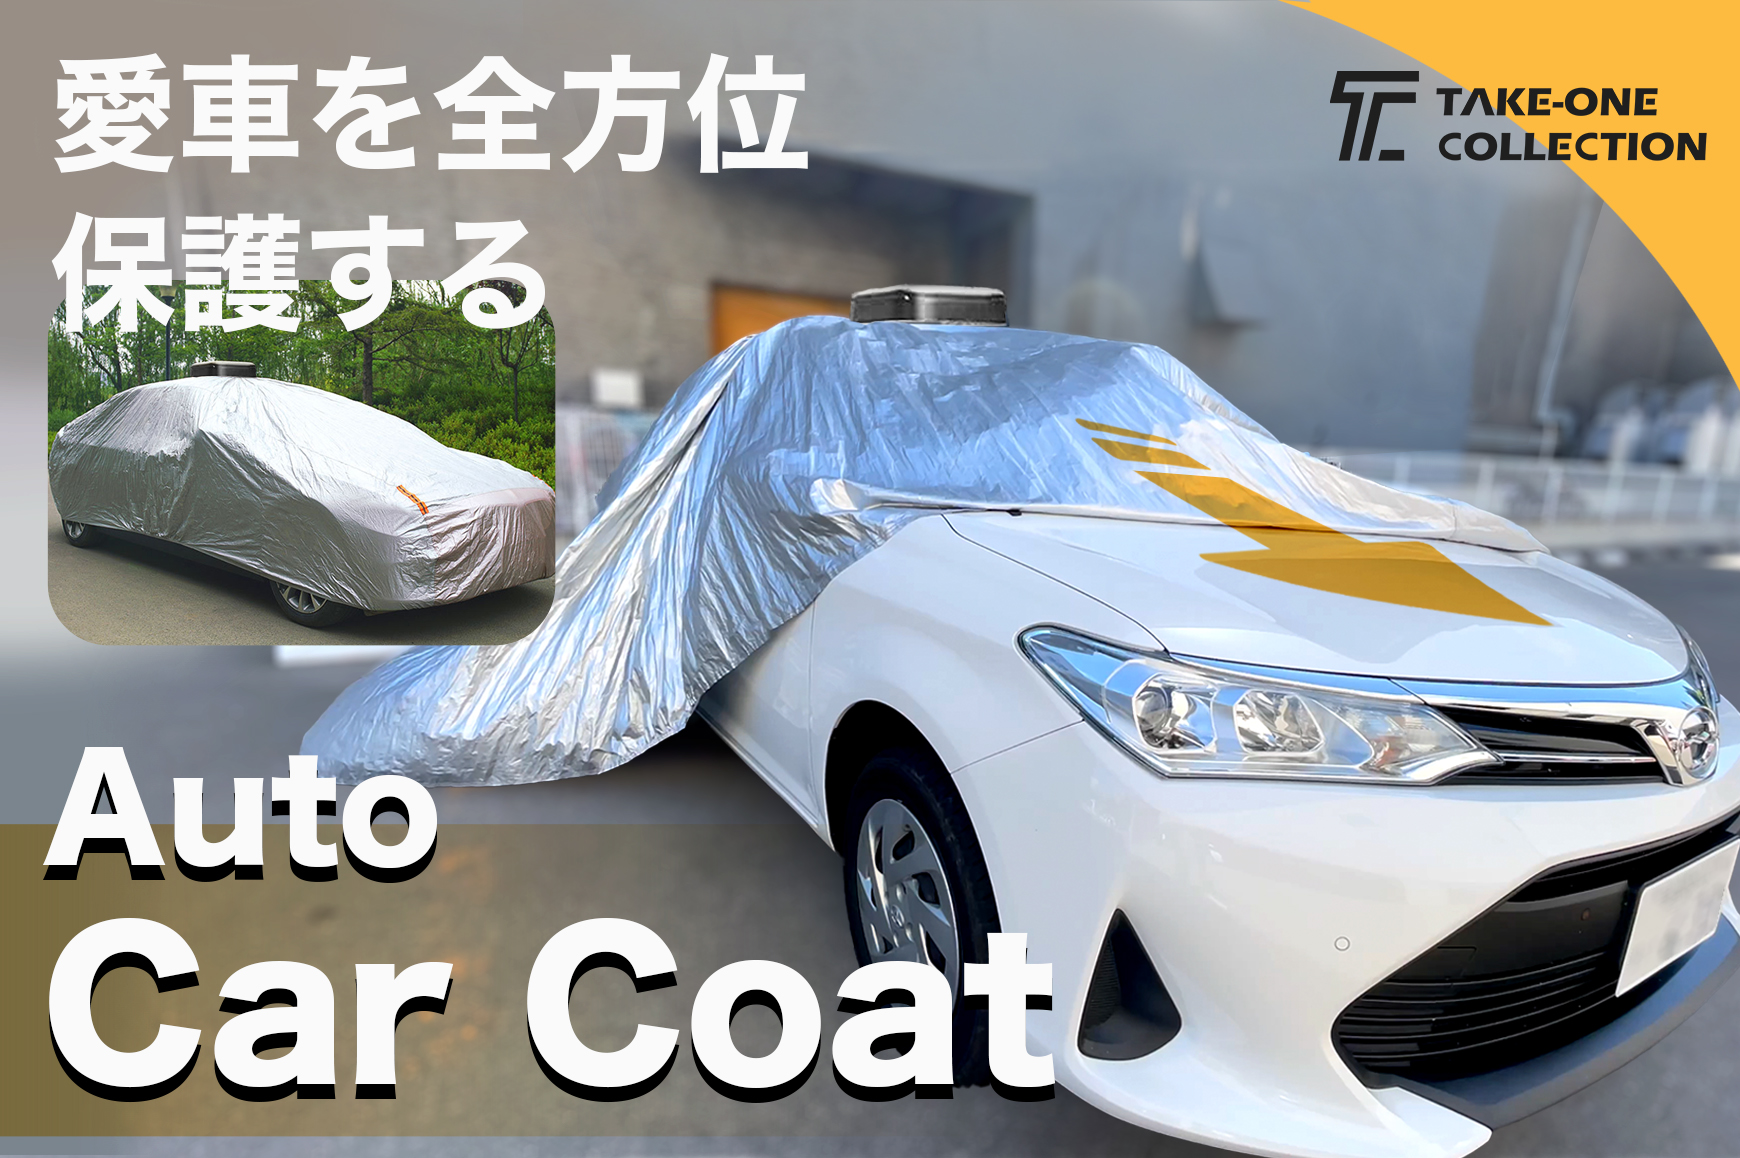 面倒な収納もボタンを押せば自動で完了 愛車を汚れや紫外線から守る車体カバー Auto Car Coat Engadget 日本版